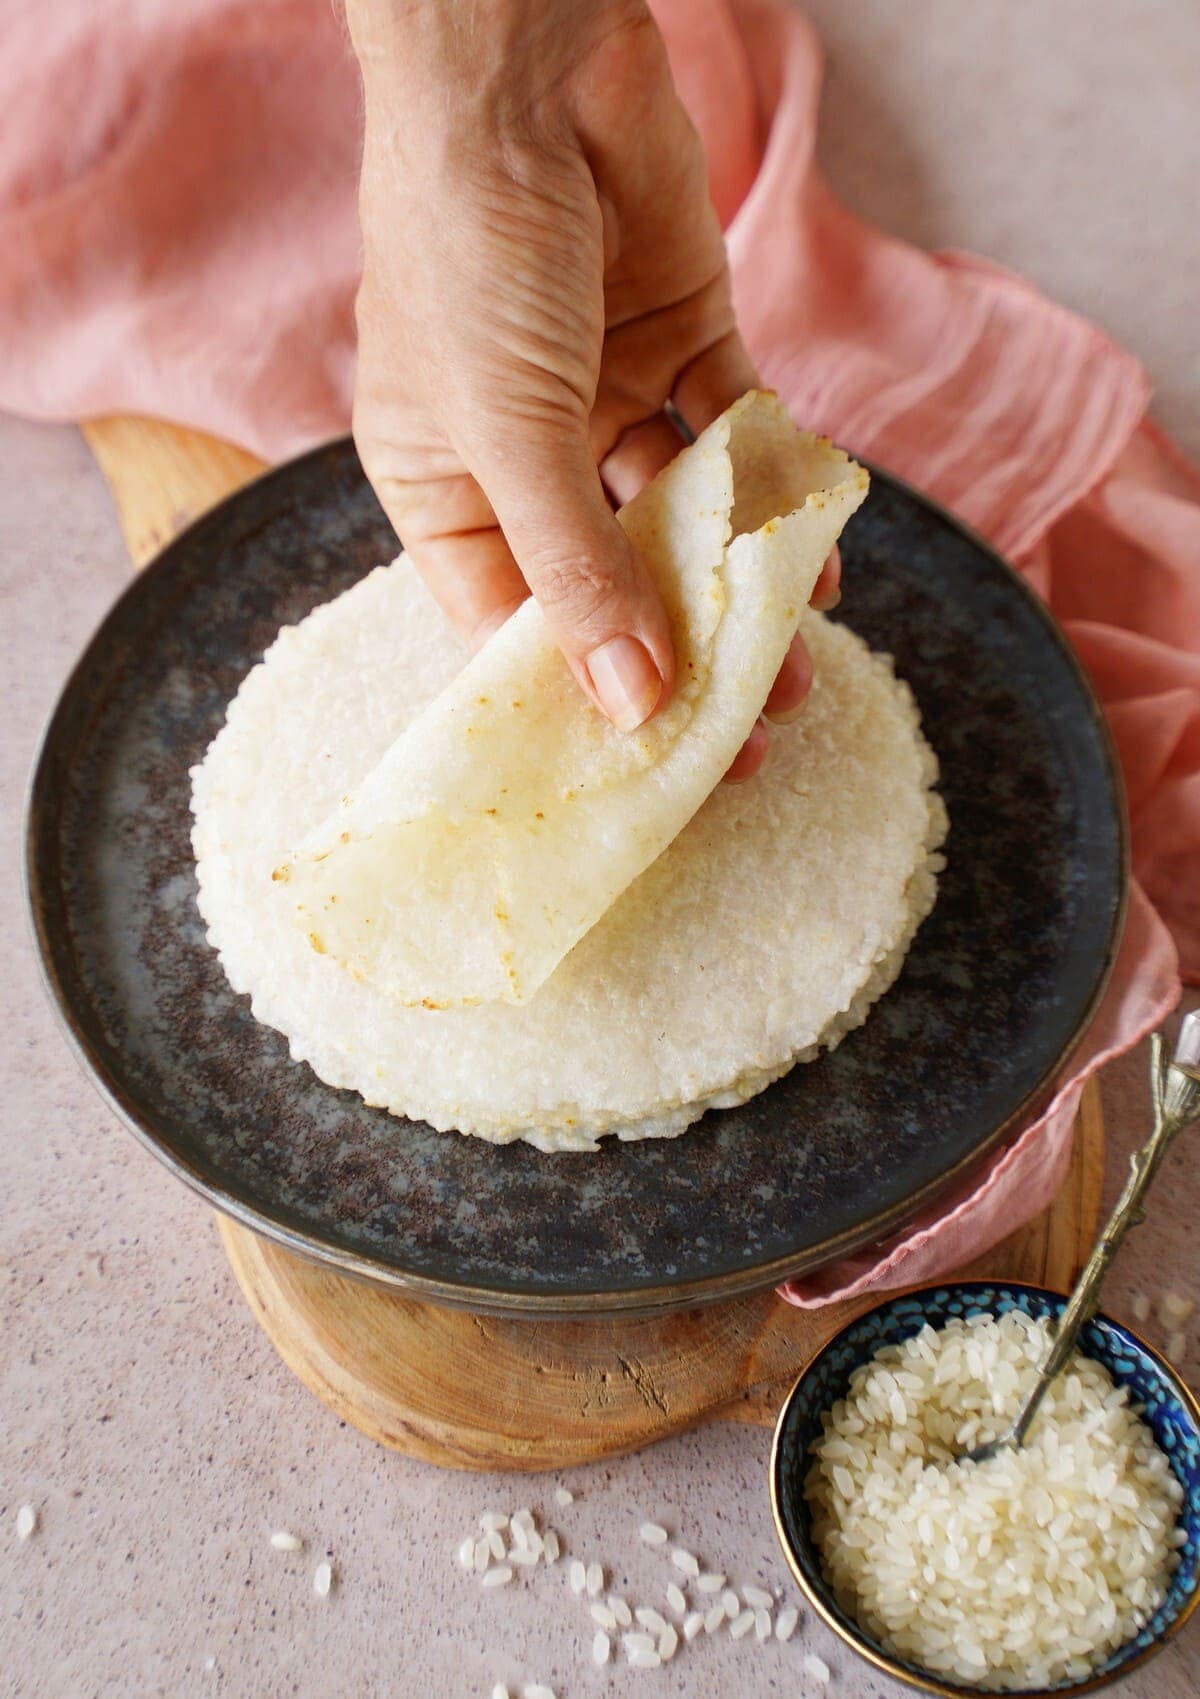 Hand, die eine gerollte glutenfreie Reis-Tortilla hält